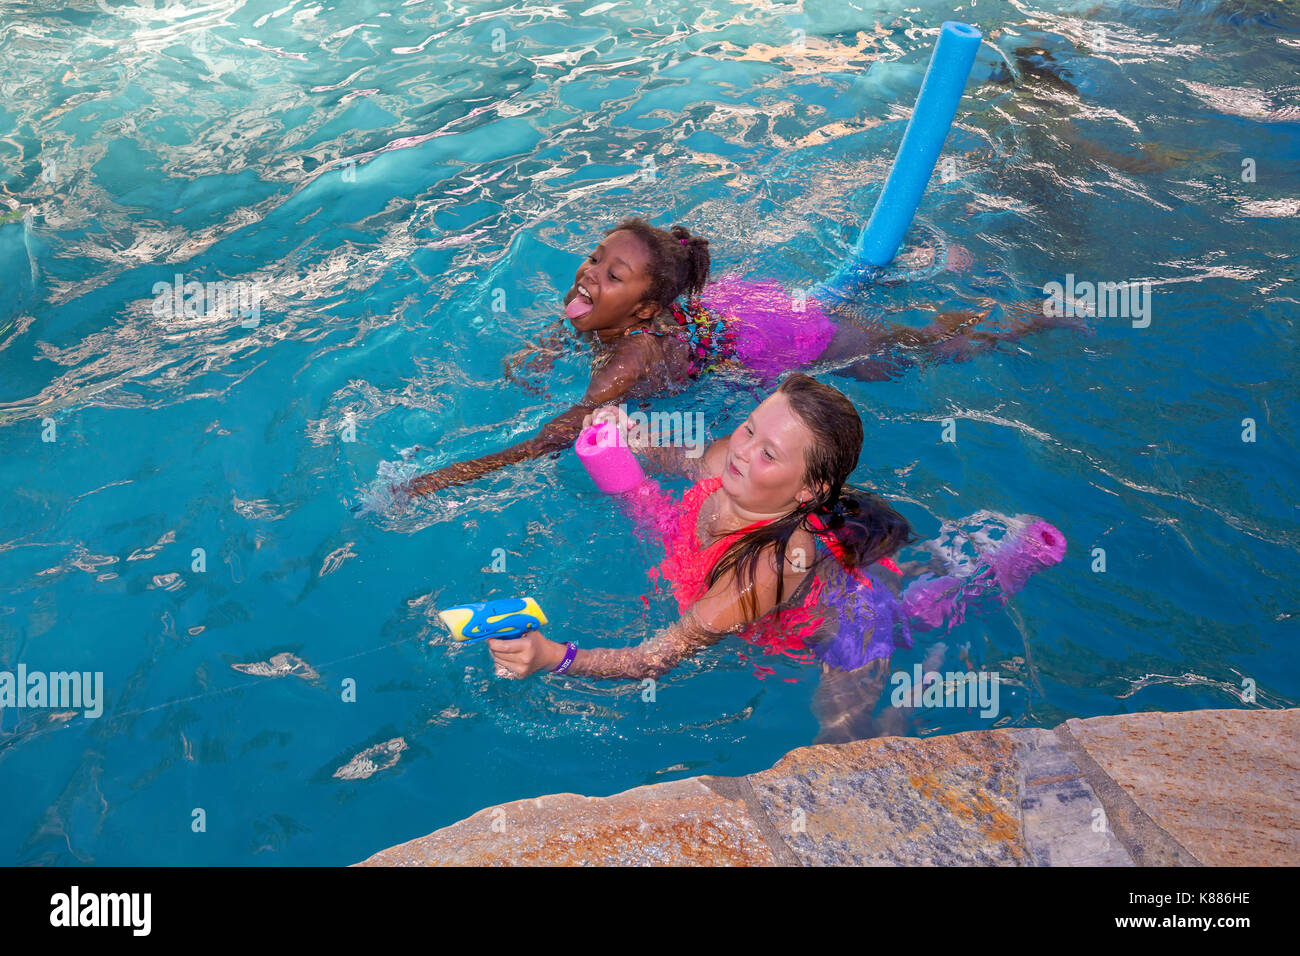 Les filles, les enfants, la lecture, l'eau d'une fontaine, une piscine, piscine d'eau douce, pool party, Castro Valley, comté d'Alameda, Californie, unité Banque D'Images